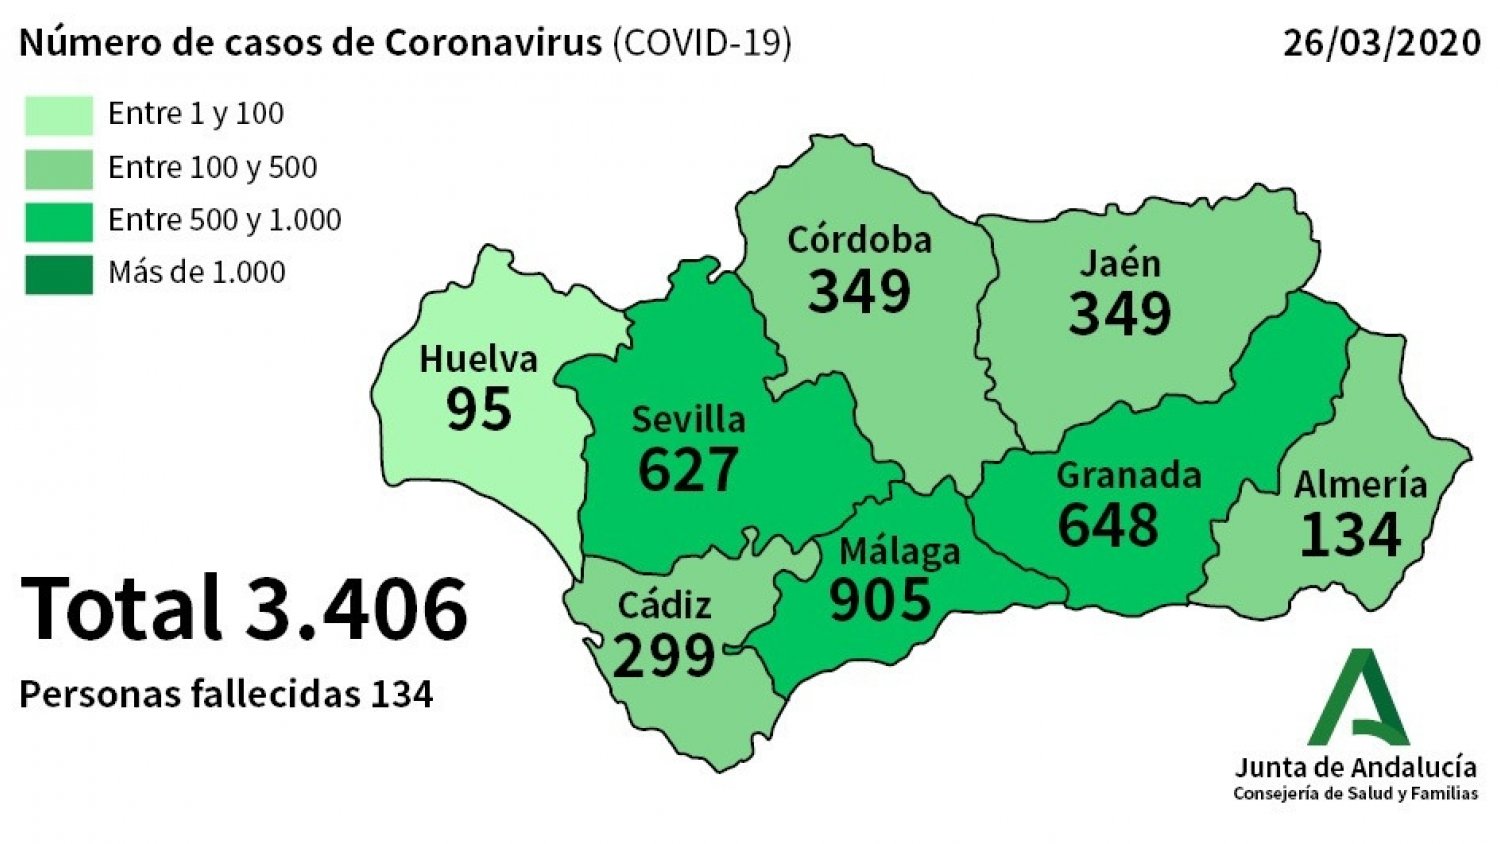 Málaga registra 86 nuevos casos por coronavirus así la cifra total de afectados asciende a 905